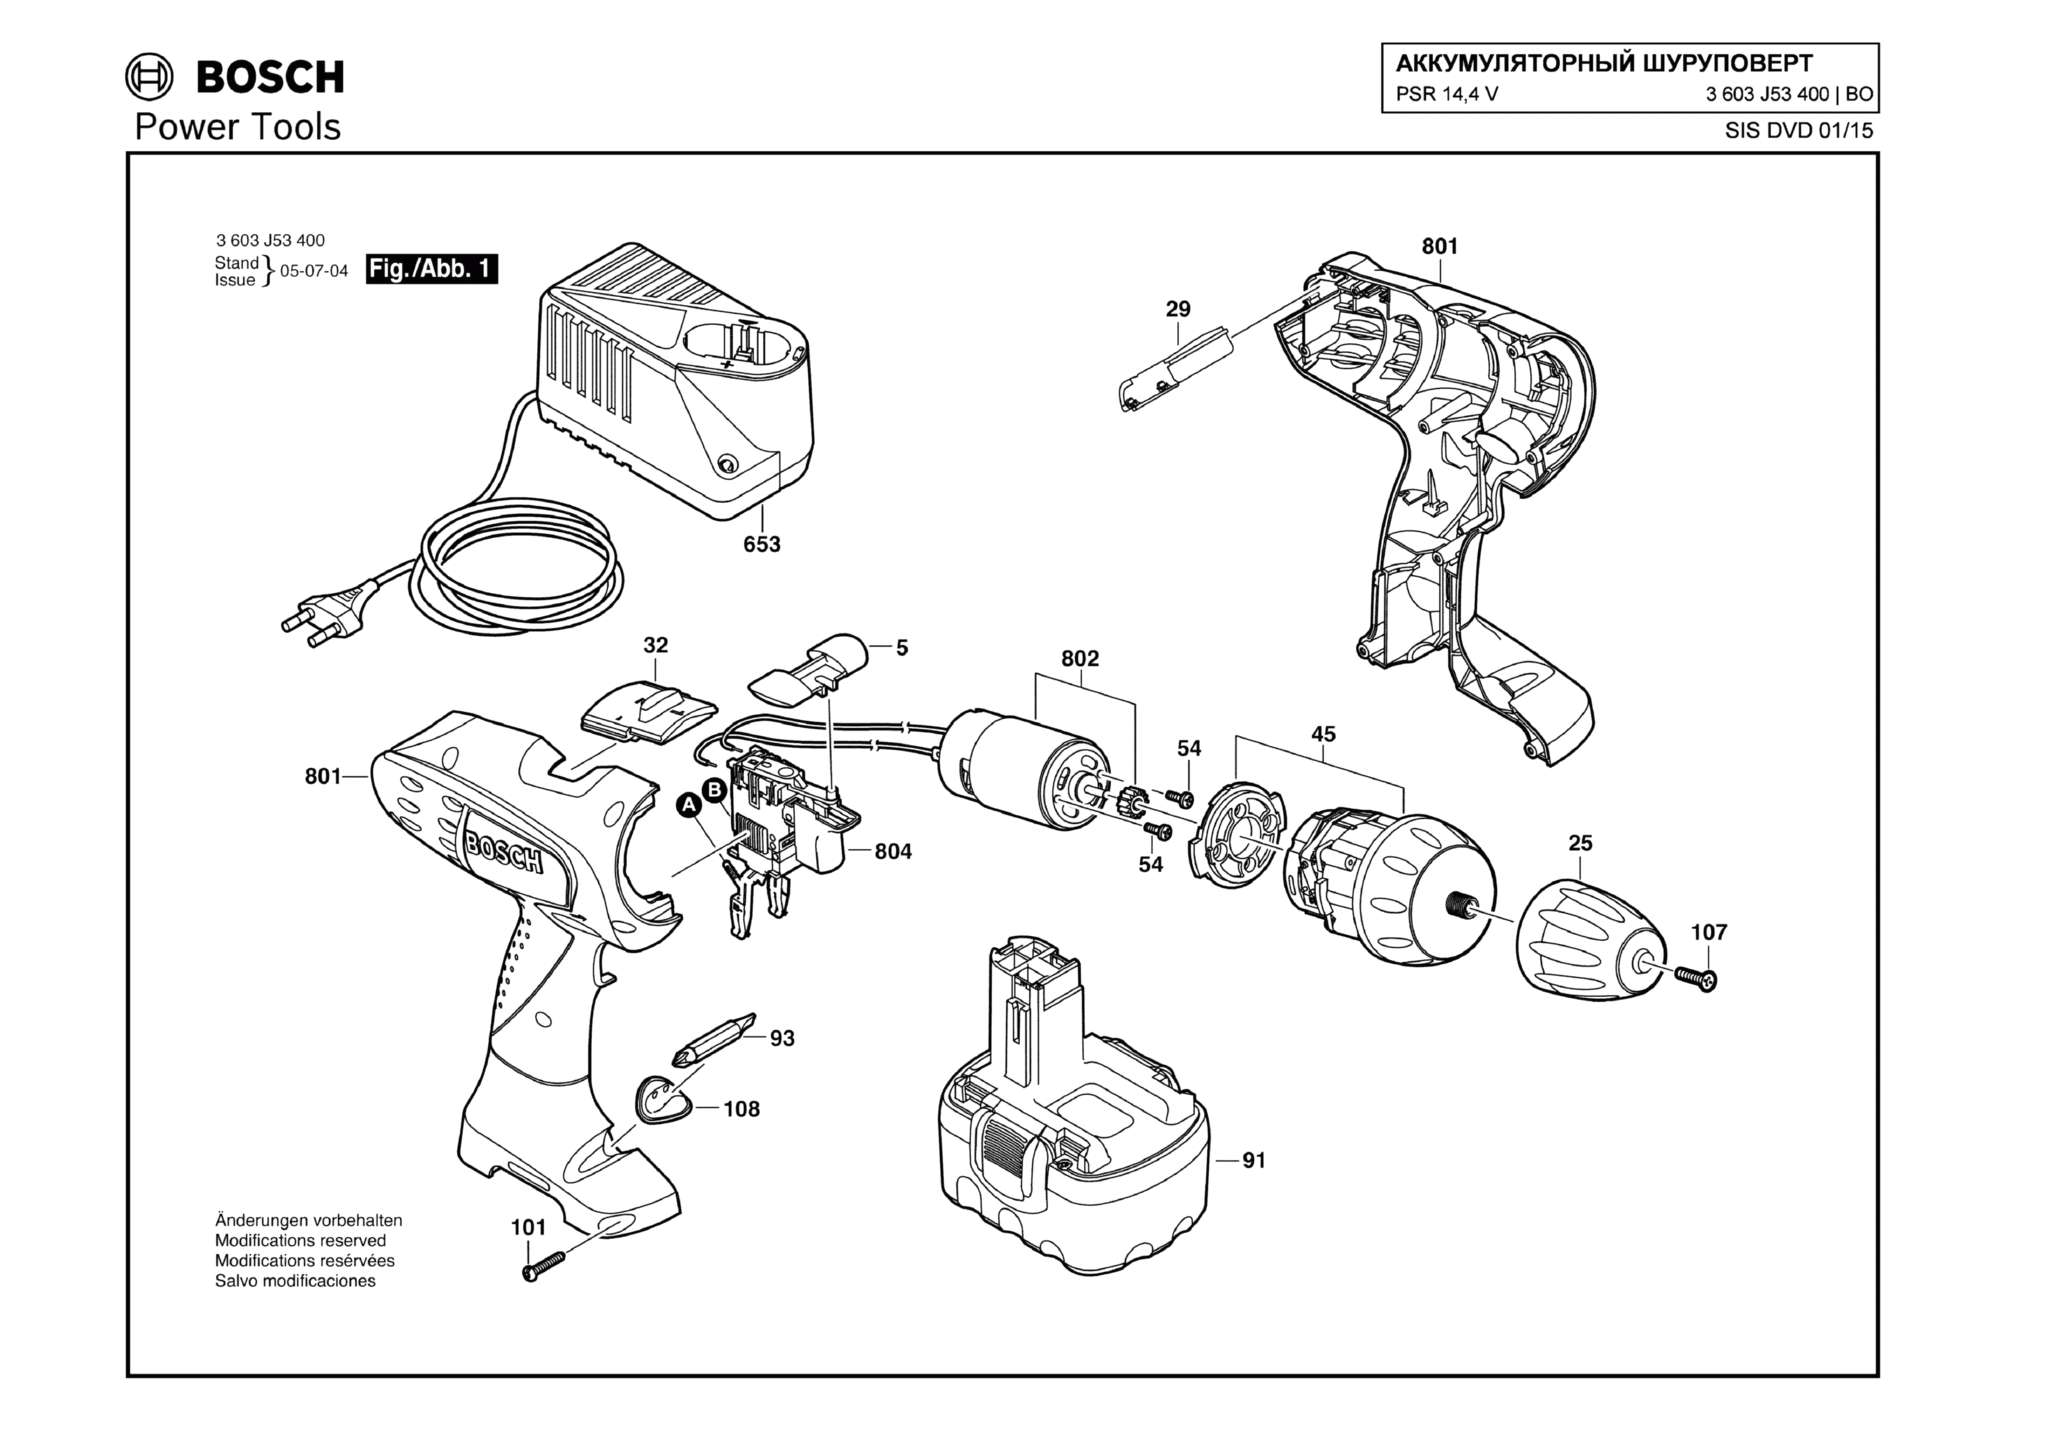 Запчасти, схема и деталировка Bosch PSR 14,4 V (ТИП 3603J53400)